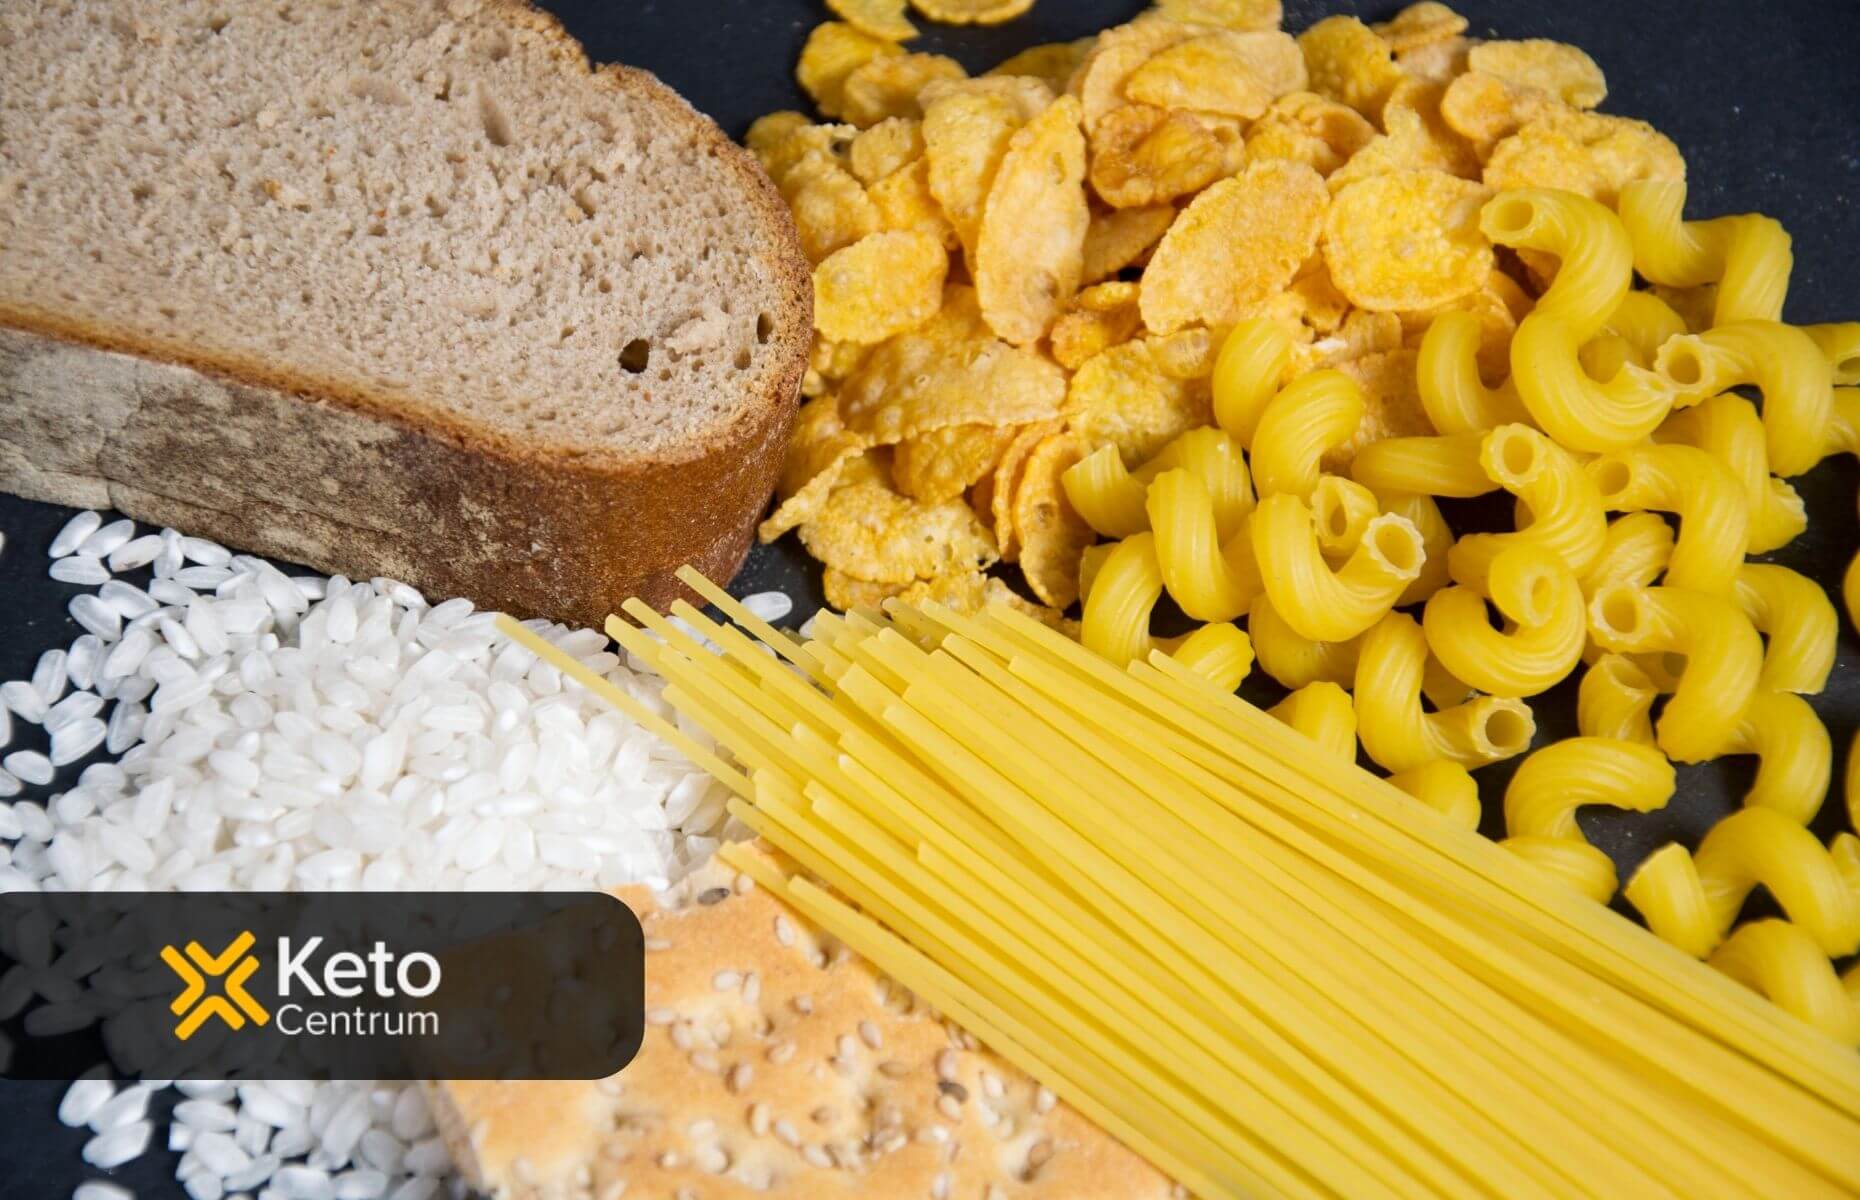 produkty zakazane na diecie ketogenicznej, biały ryż, makarony i płatki kukurydziane, chleb